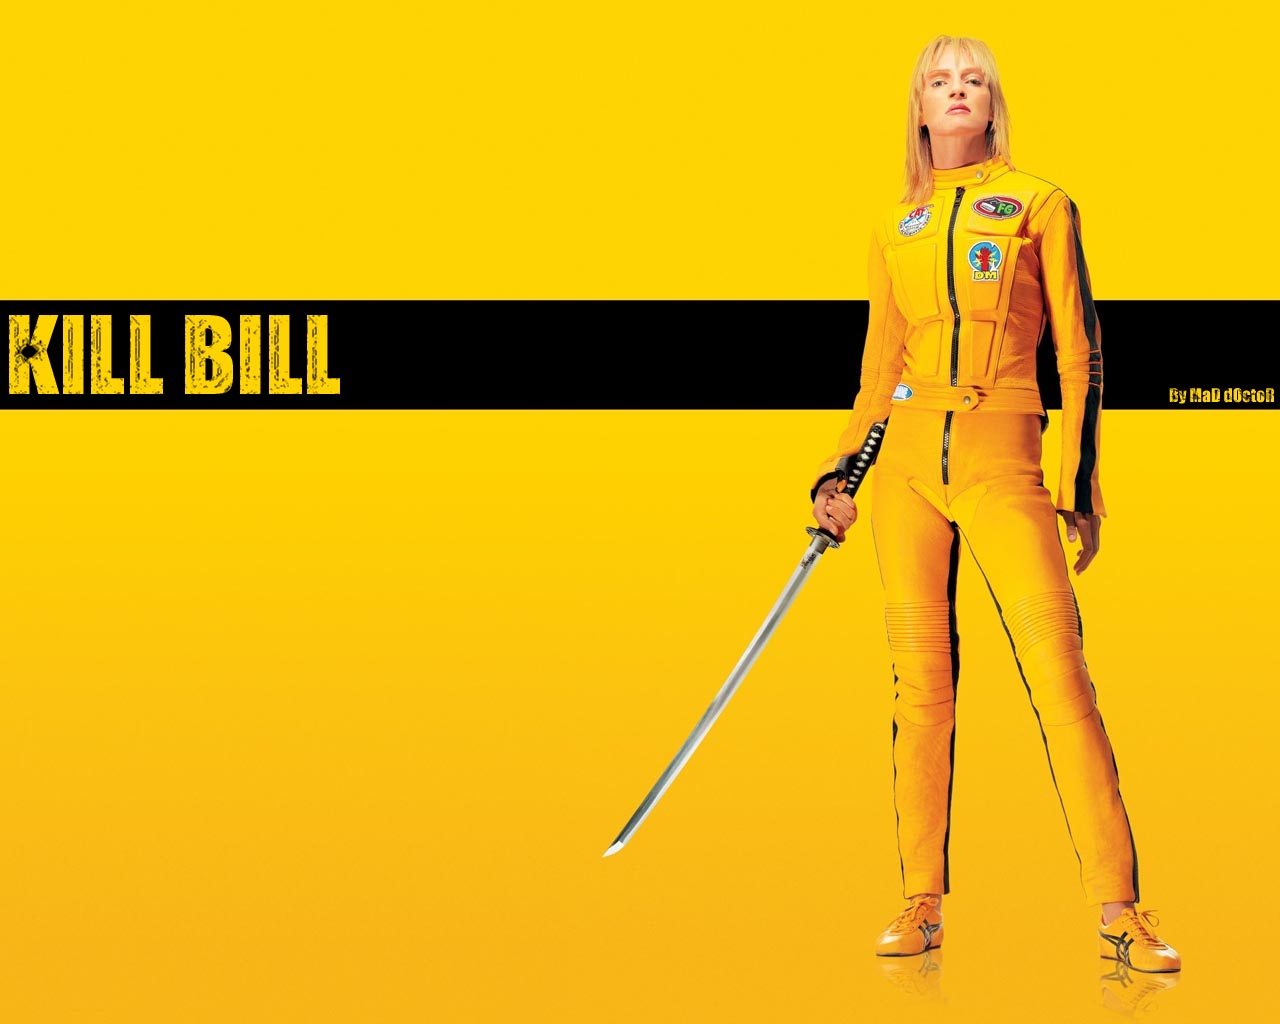 Kill Bill Vol 1 Wallpaper 9   1280 X 1024 stmednet 1280x1024